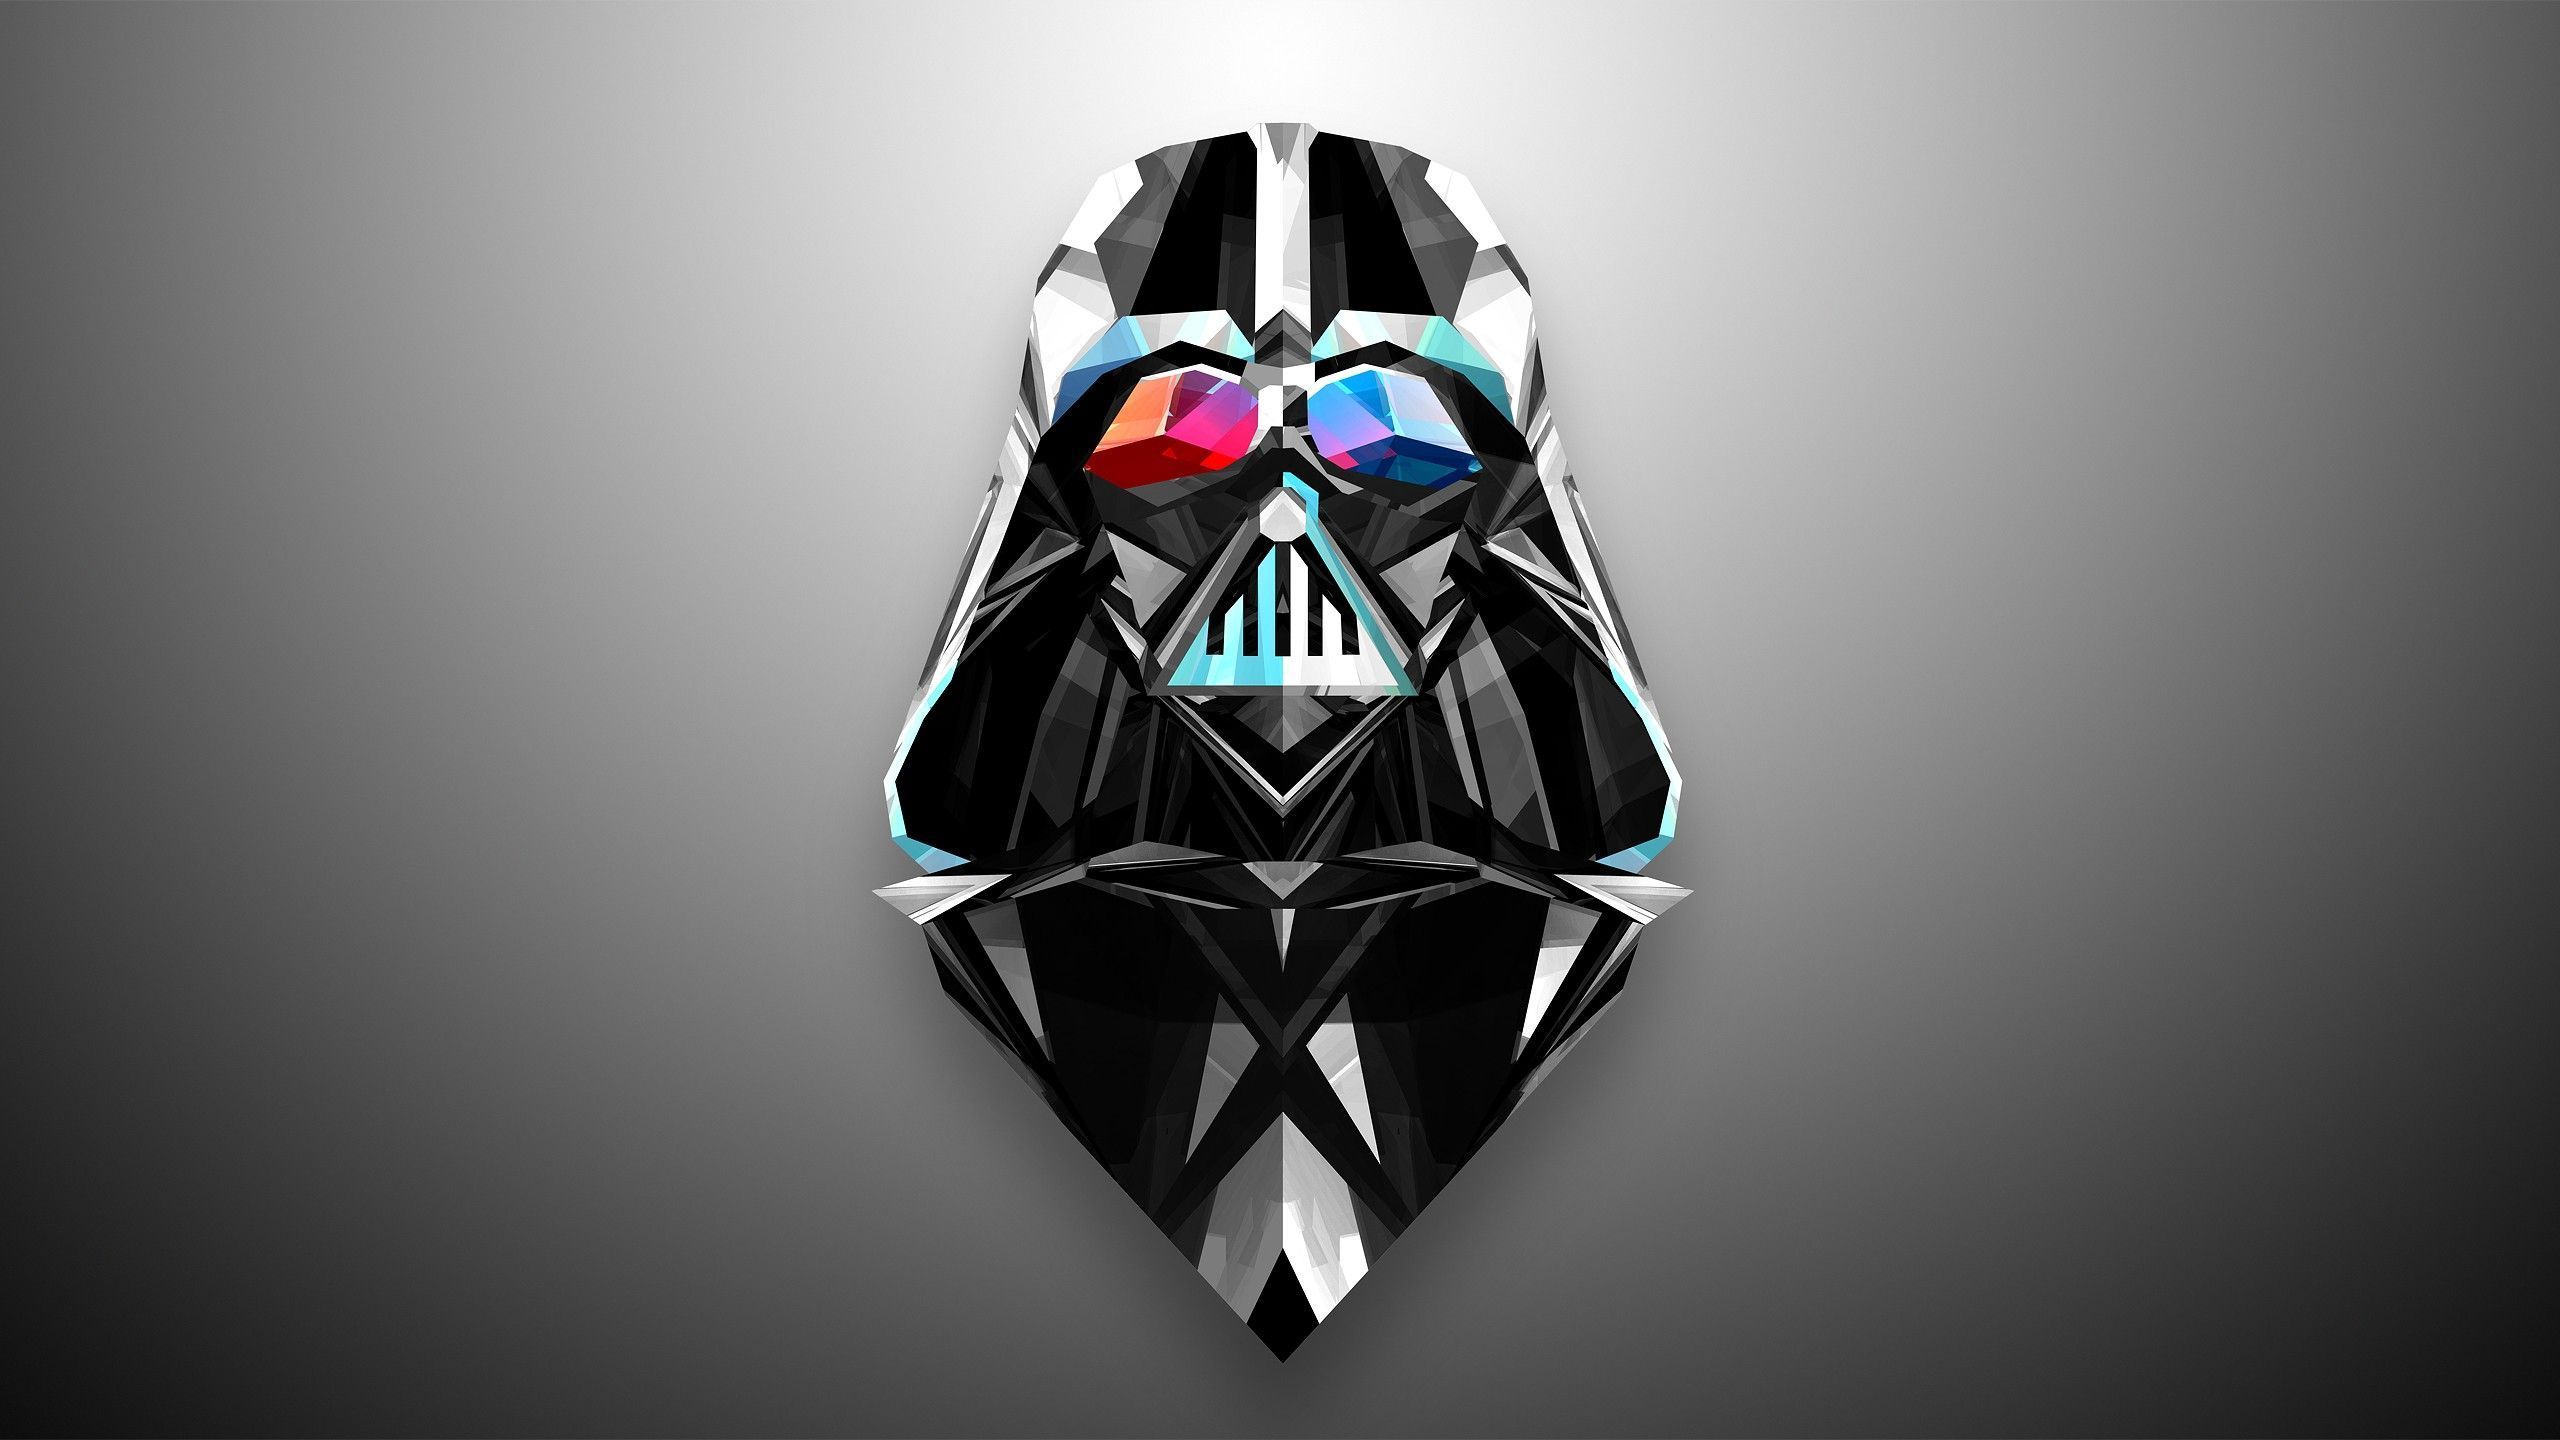 Darth Vader mask - Star Wars desktop wallpaper 29286